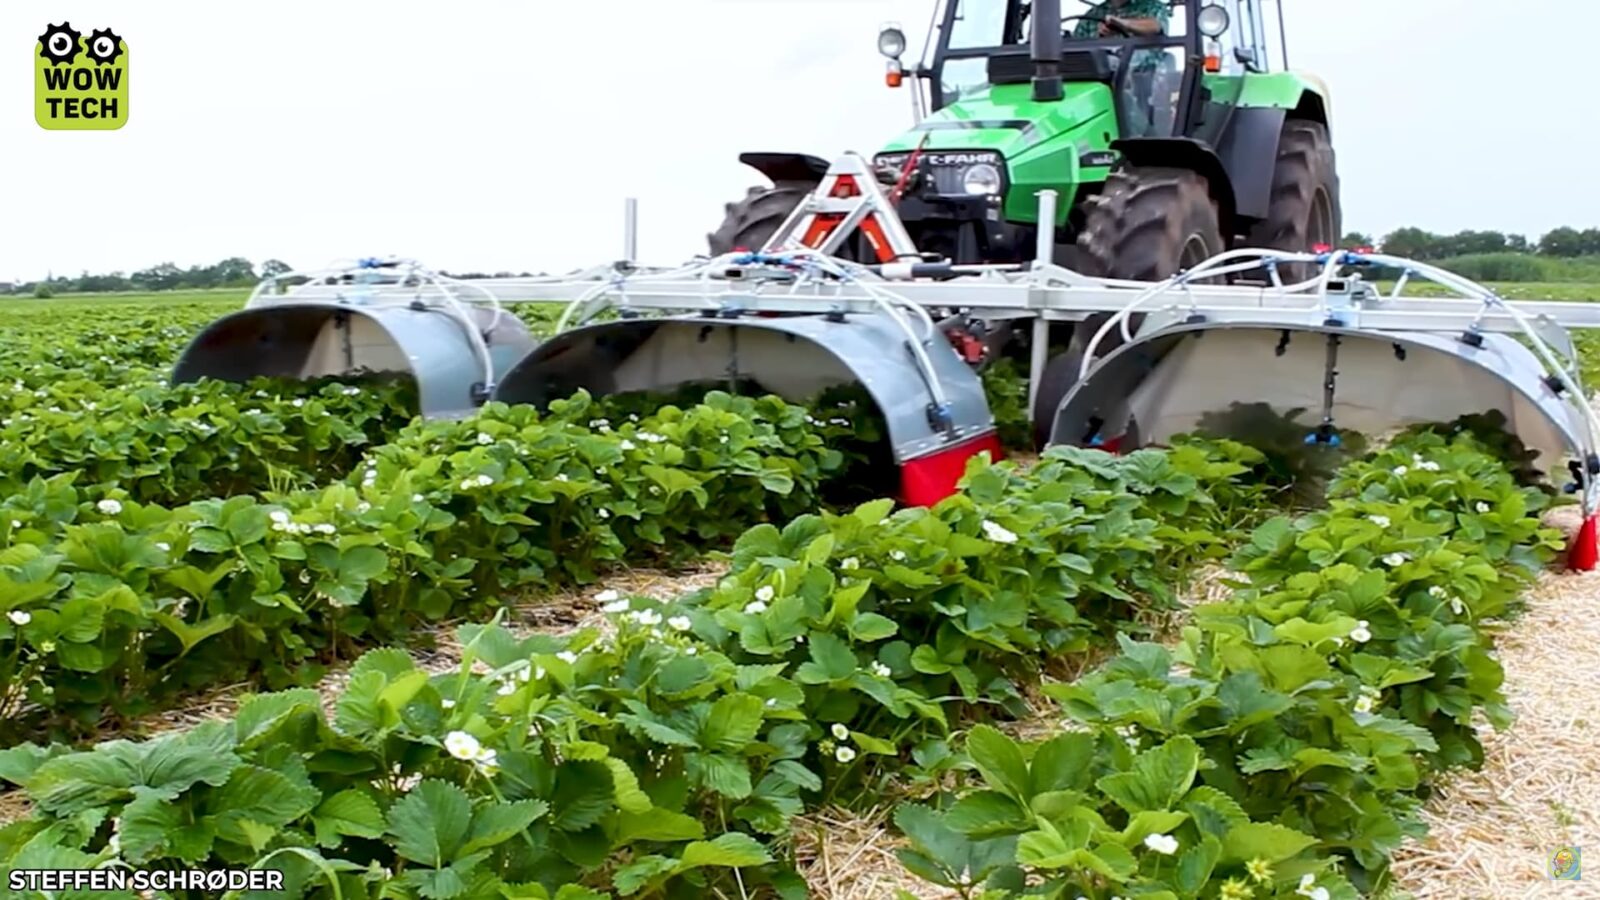 Máquinas agrícolas modernas que estão revolucionando o campo